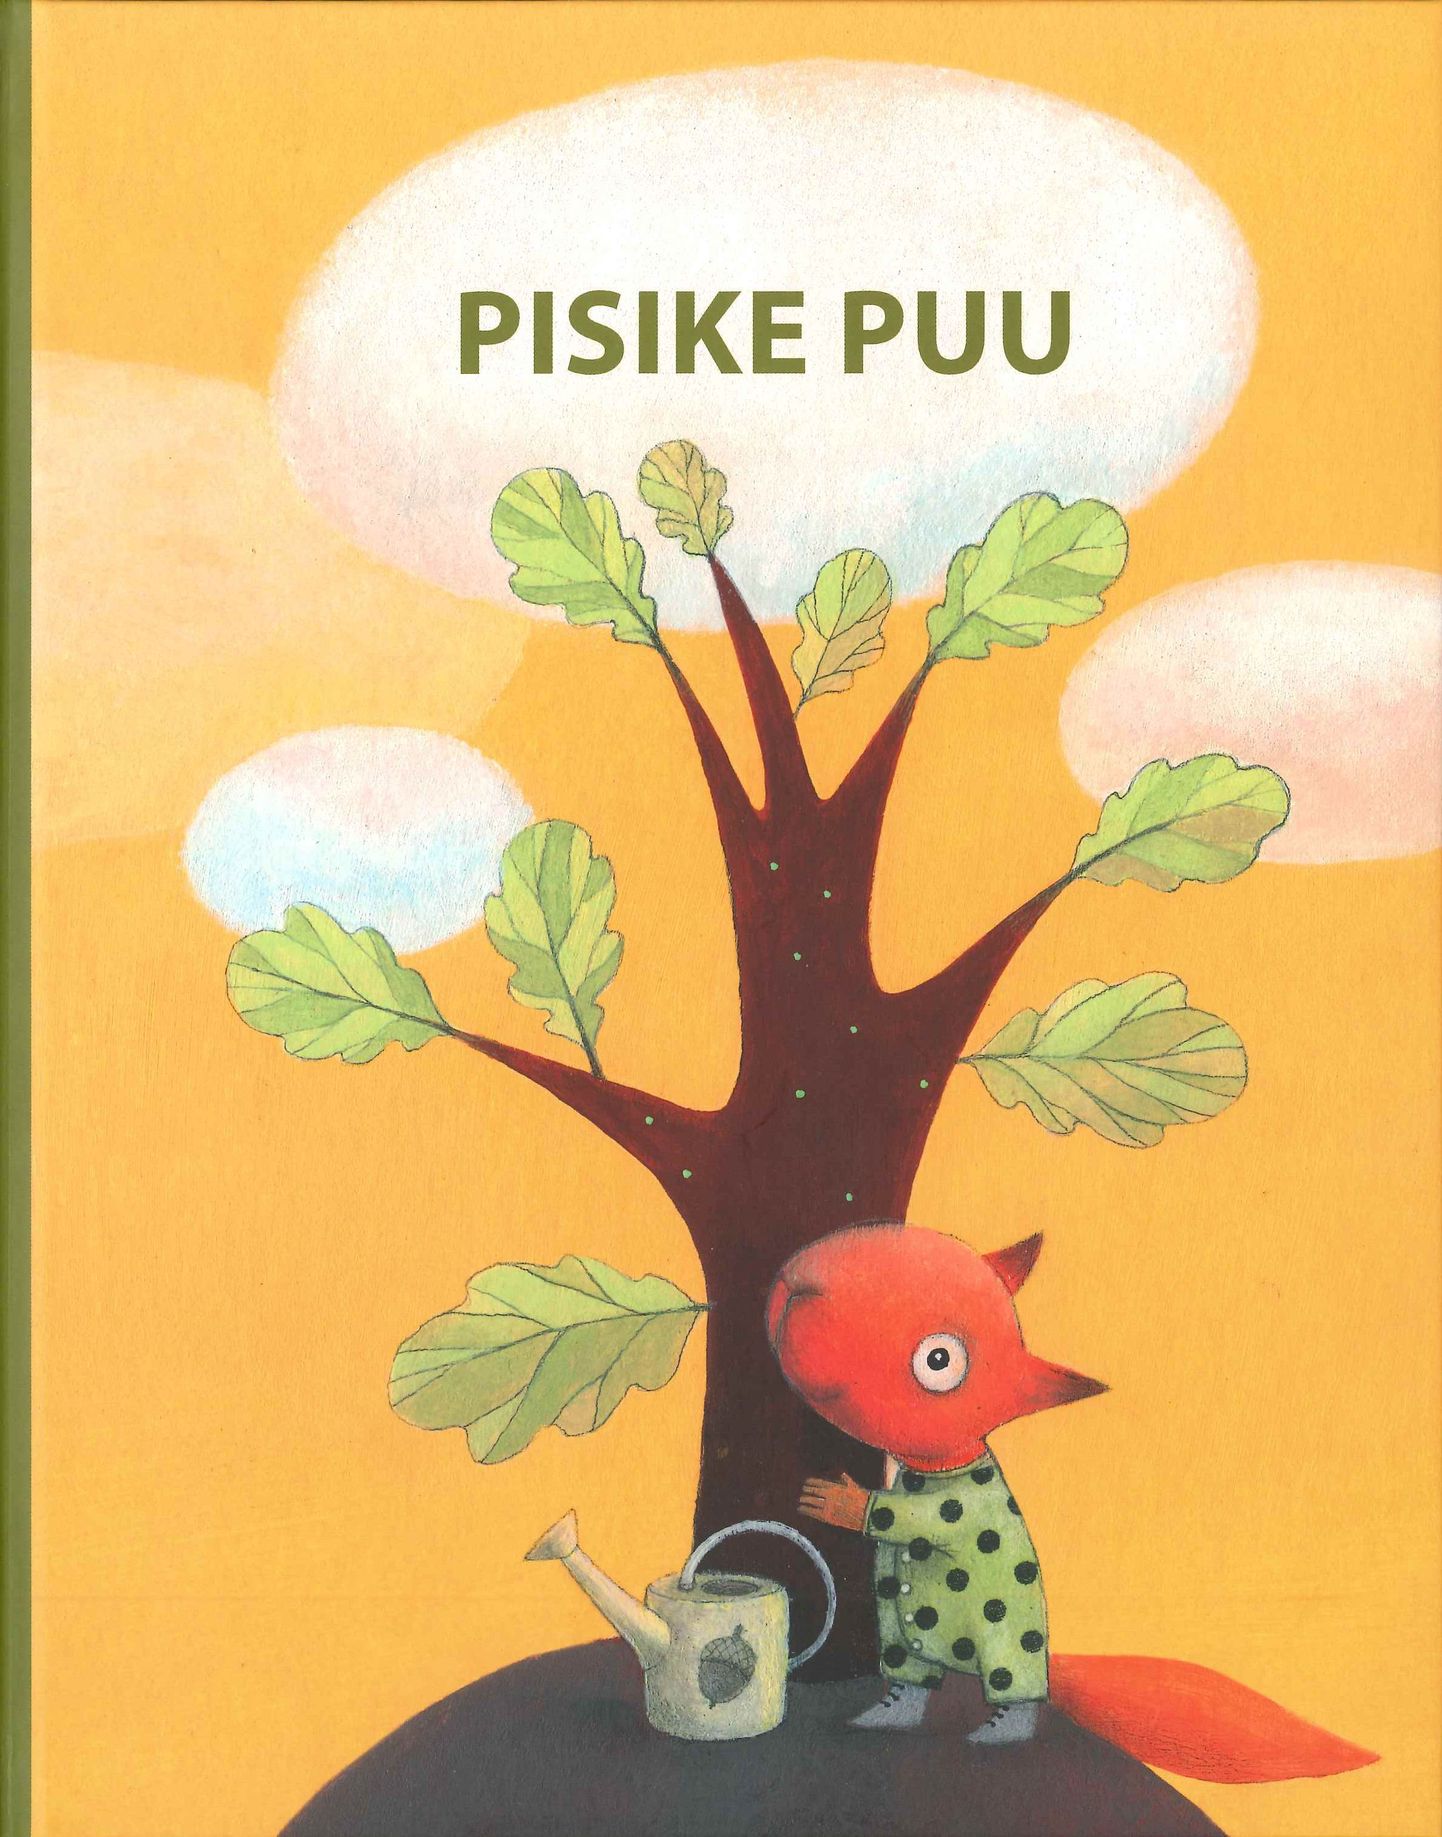 2015.–2018. aastal Eestis sündinud ja sündivatele lastele kingitakse raamat "Pisike puu", mille on välja andnud Eesti lastekirjanduse keskus ja kultuuriministeerium.